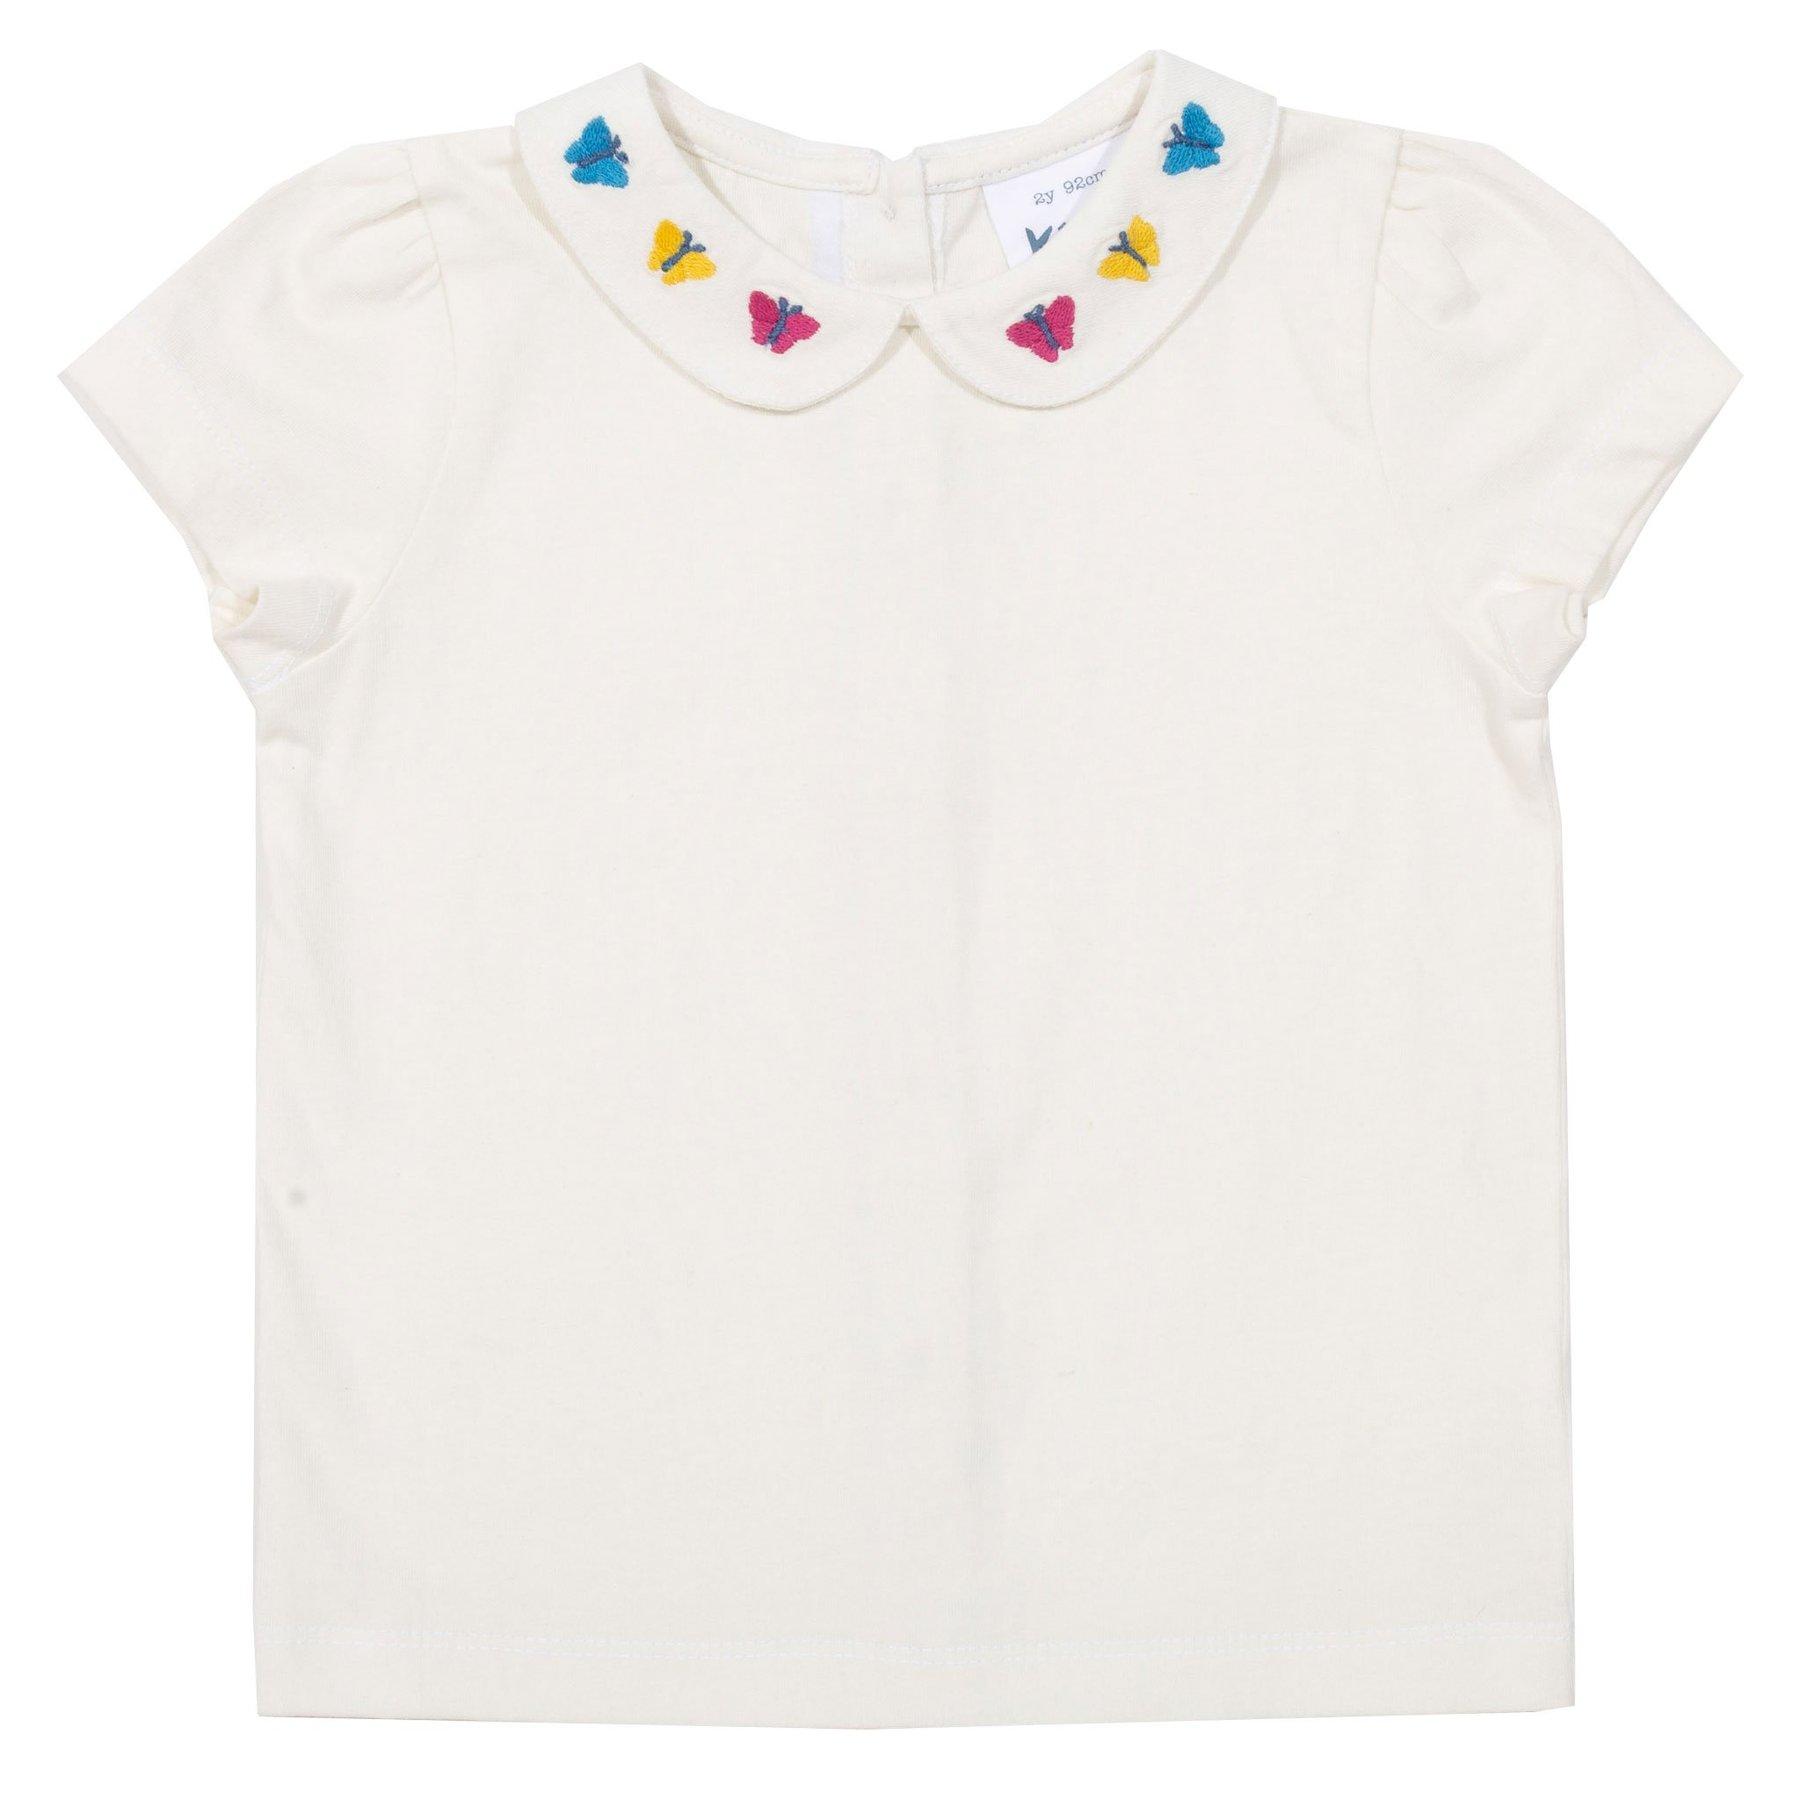 Kite Clothing Wavy Daisy Set blouse